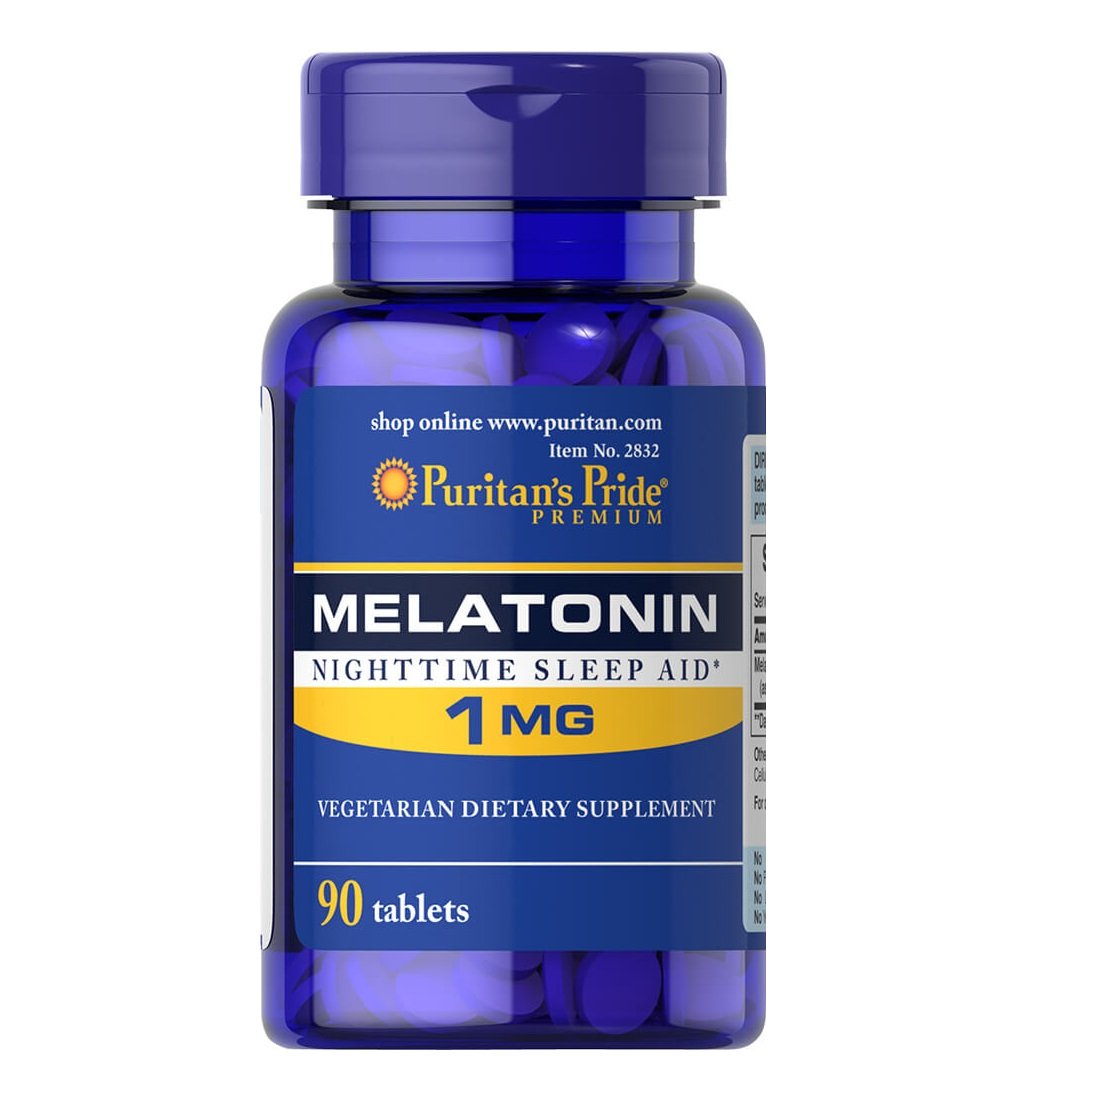 Натуральная добавка Puritan's Pride Melatonin 1 mg, 90 таблеток,  мл, Puritan's Pride. Hатуральные продукты. Поддержание здоровья 